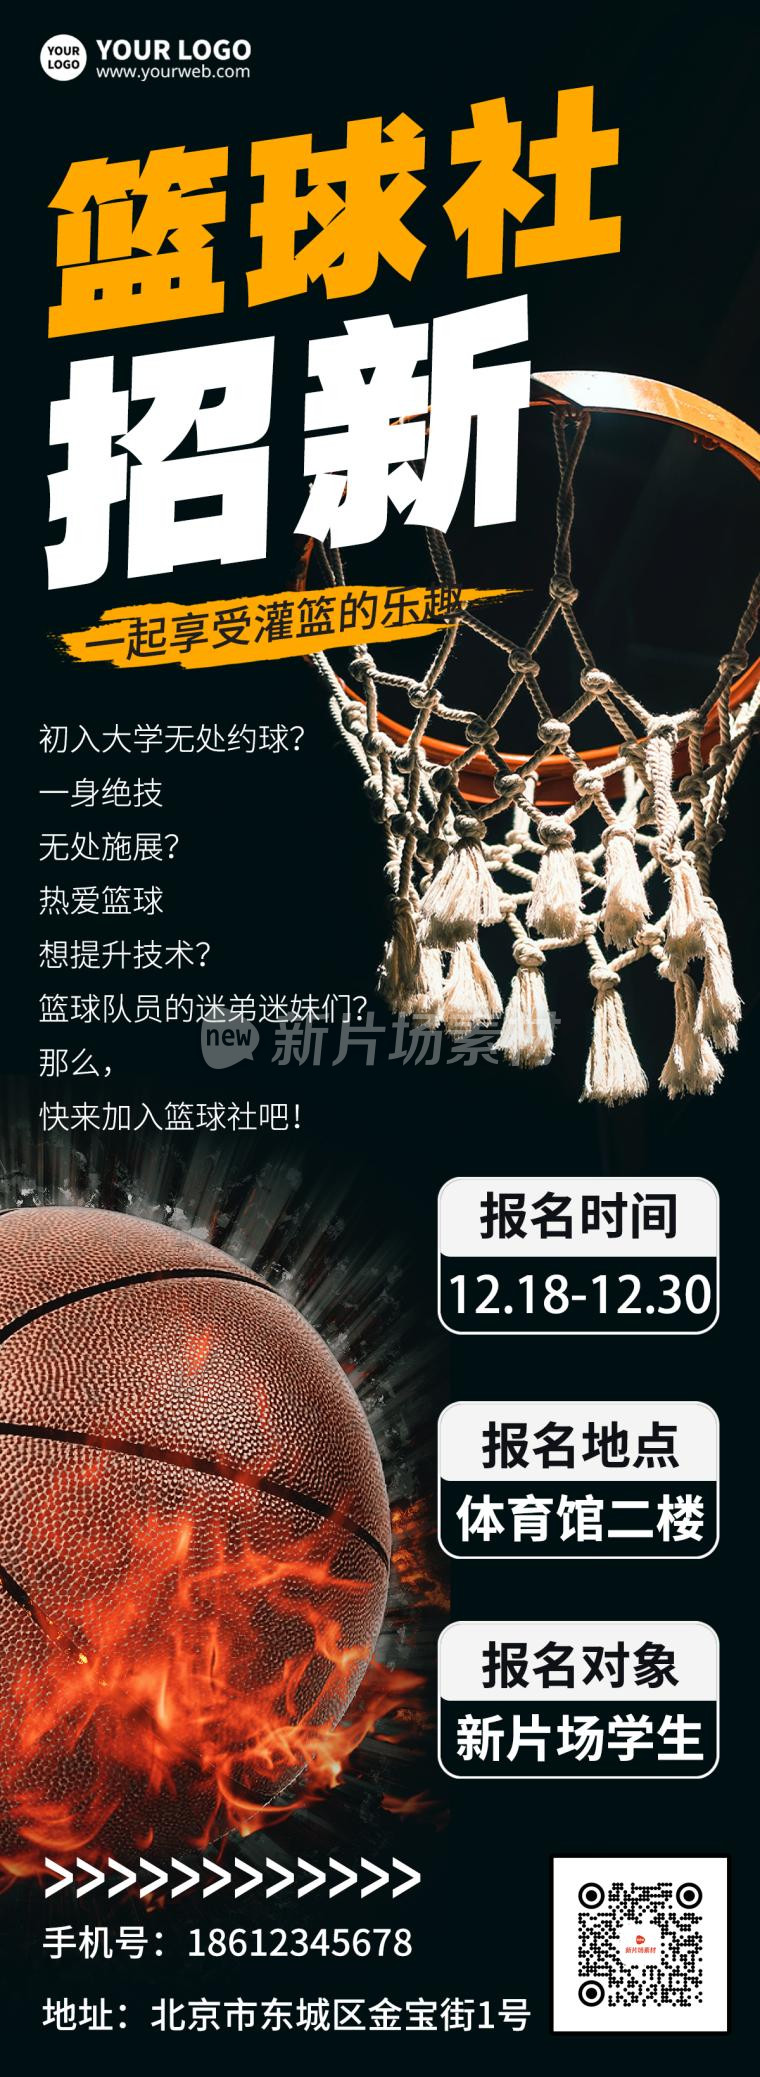 篮球社招新促销手机海报长图